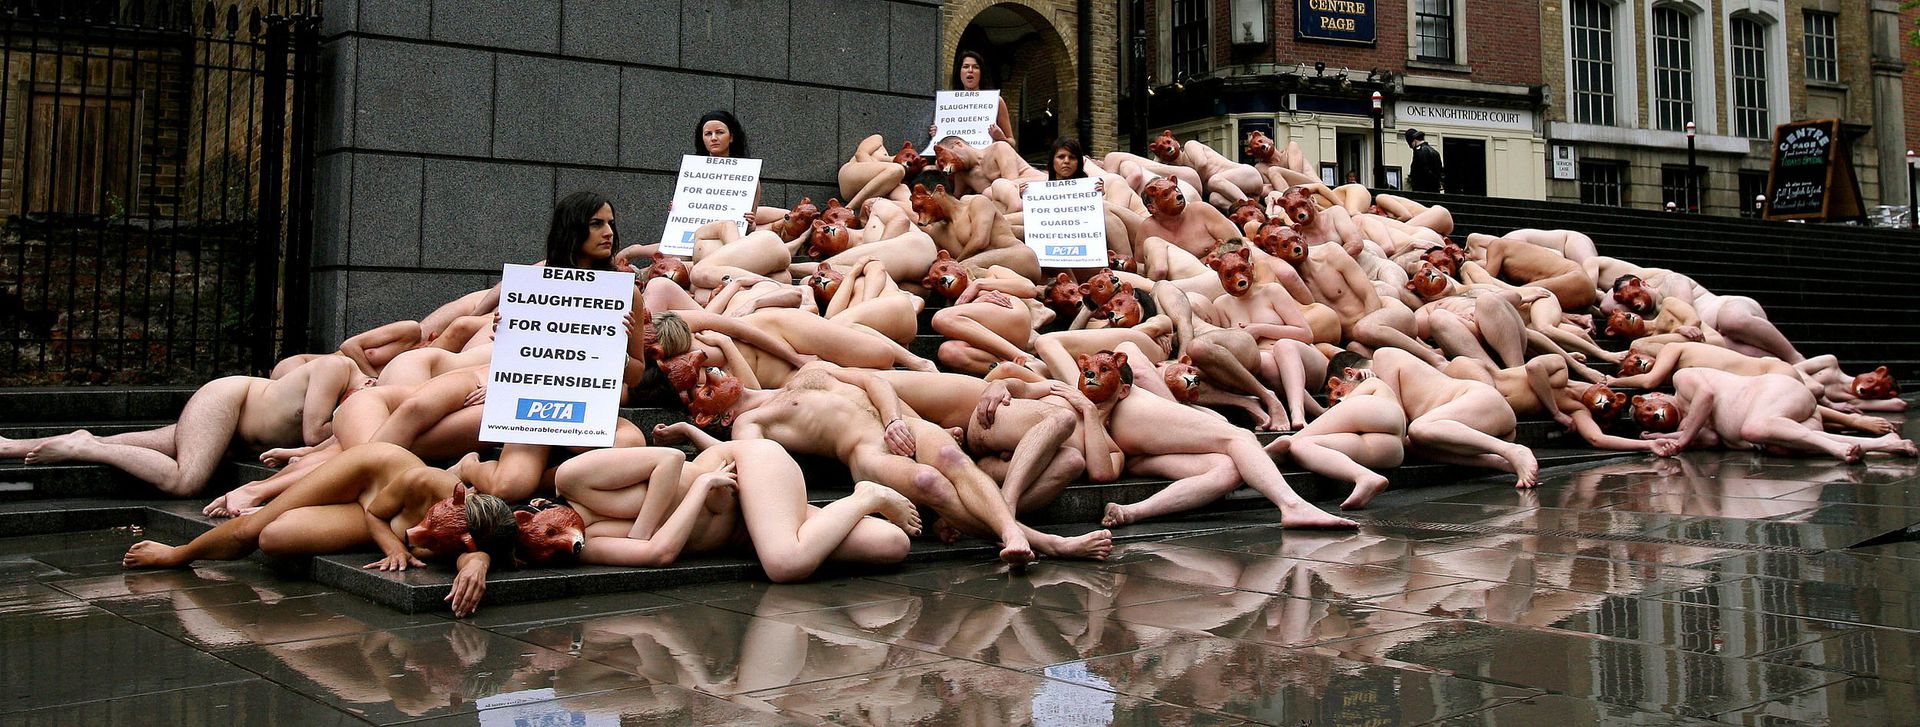 Peta nude protest